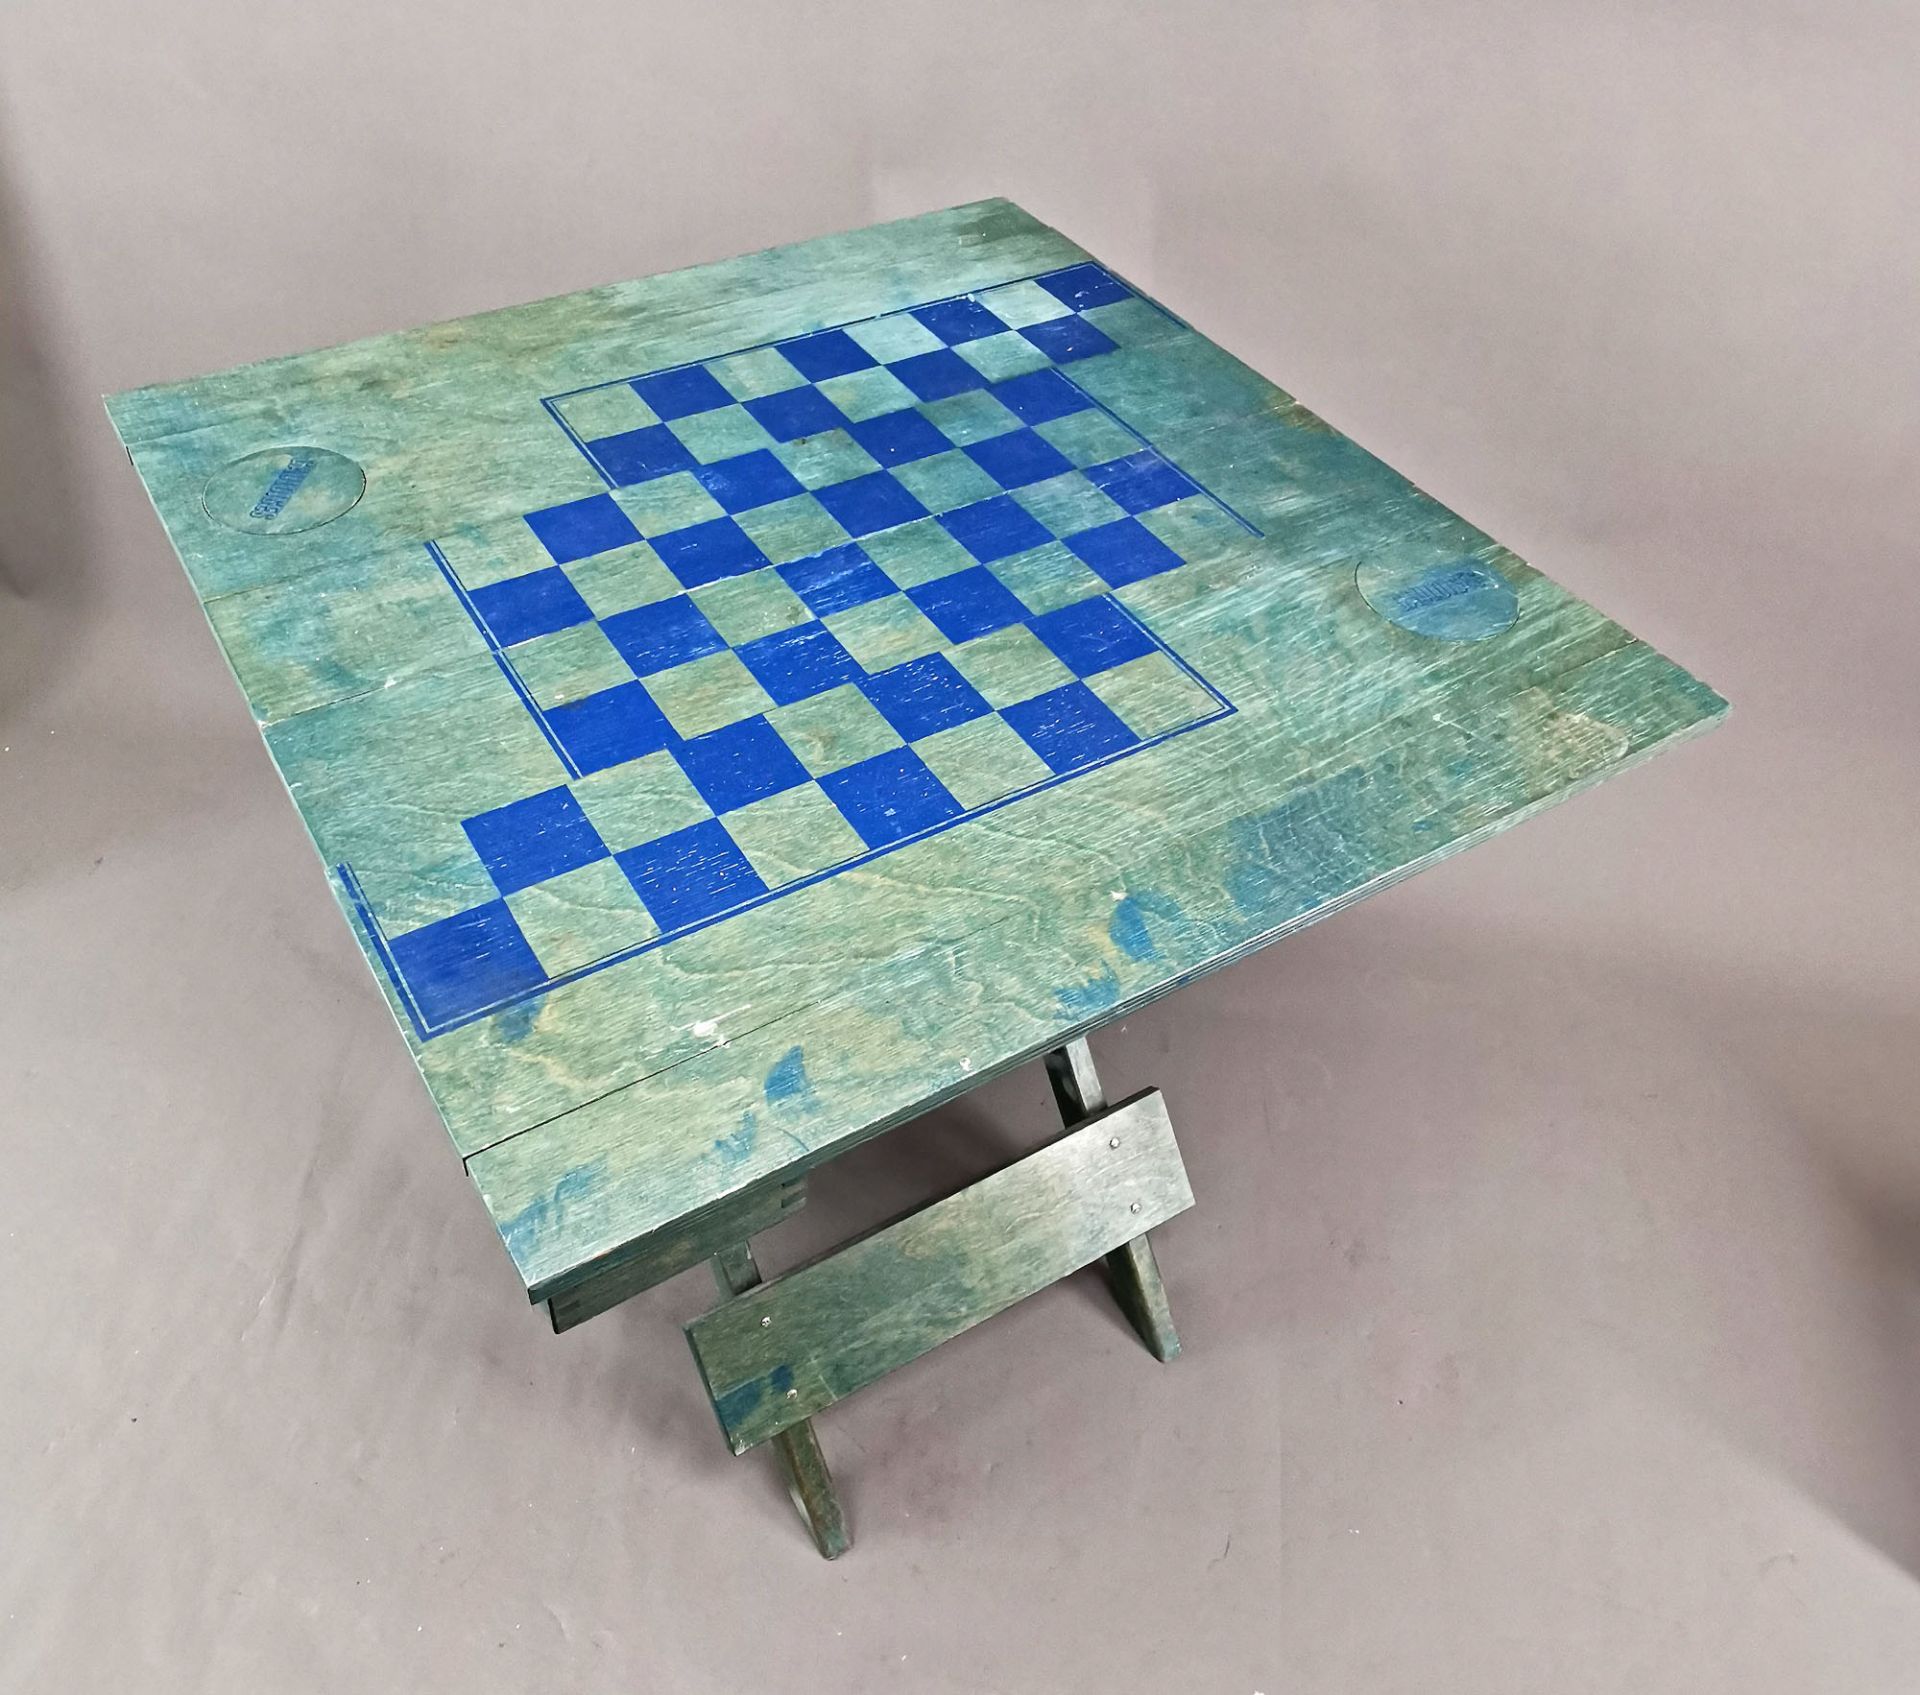 Designer Schachspiel mit Spieltisch und Figuren "Gauloises" - Bild 3 aus 3